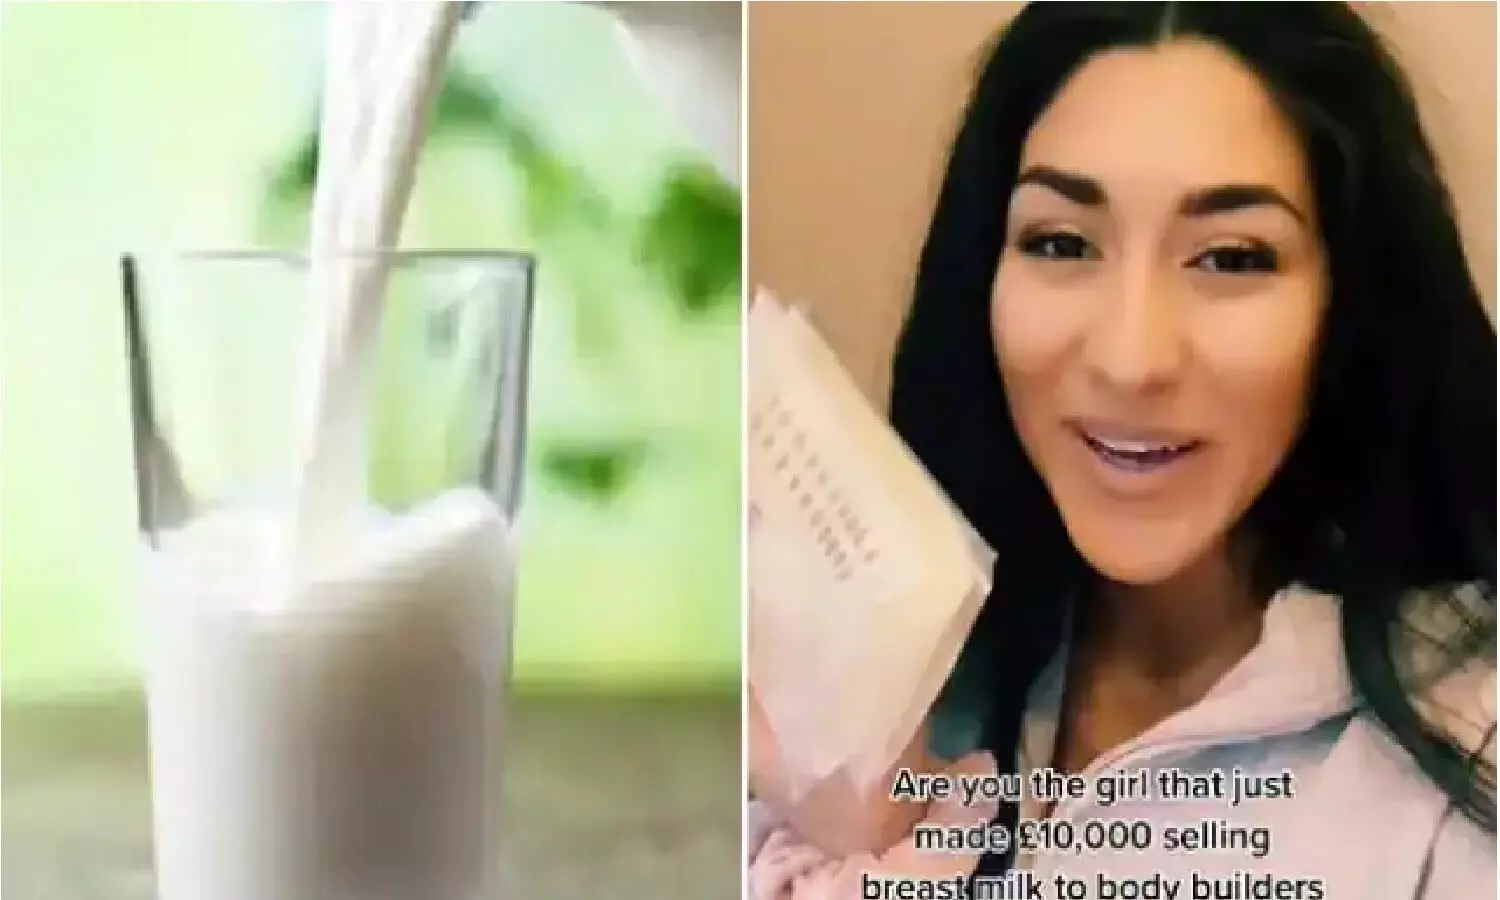 Woman Sells her Breast Milk: UK की एक मां ने अपने ब्रेस्ट मिल्क को बेचकर लाखों रुपए कमाएं, जानिए कैसे?